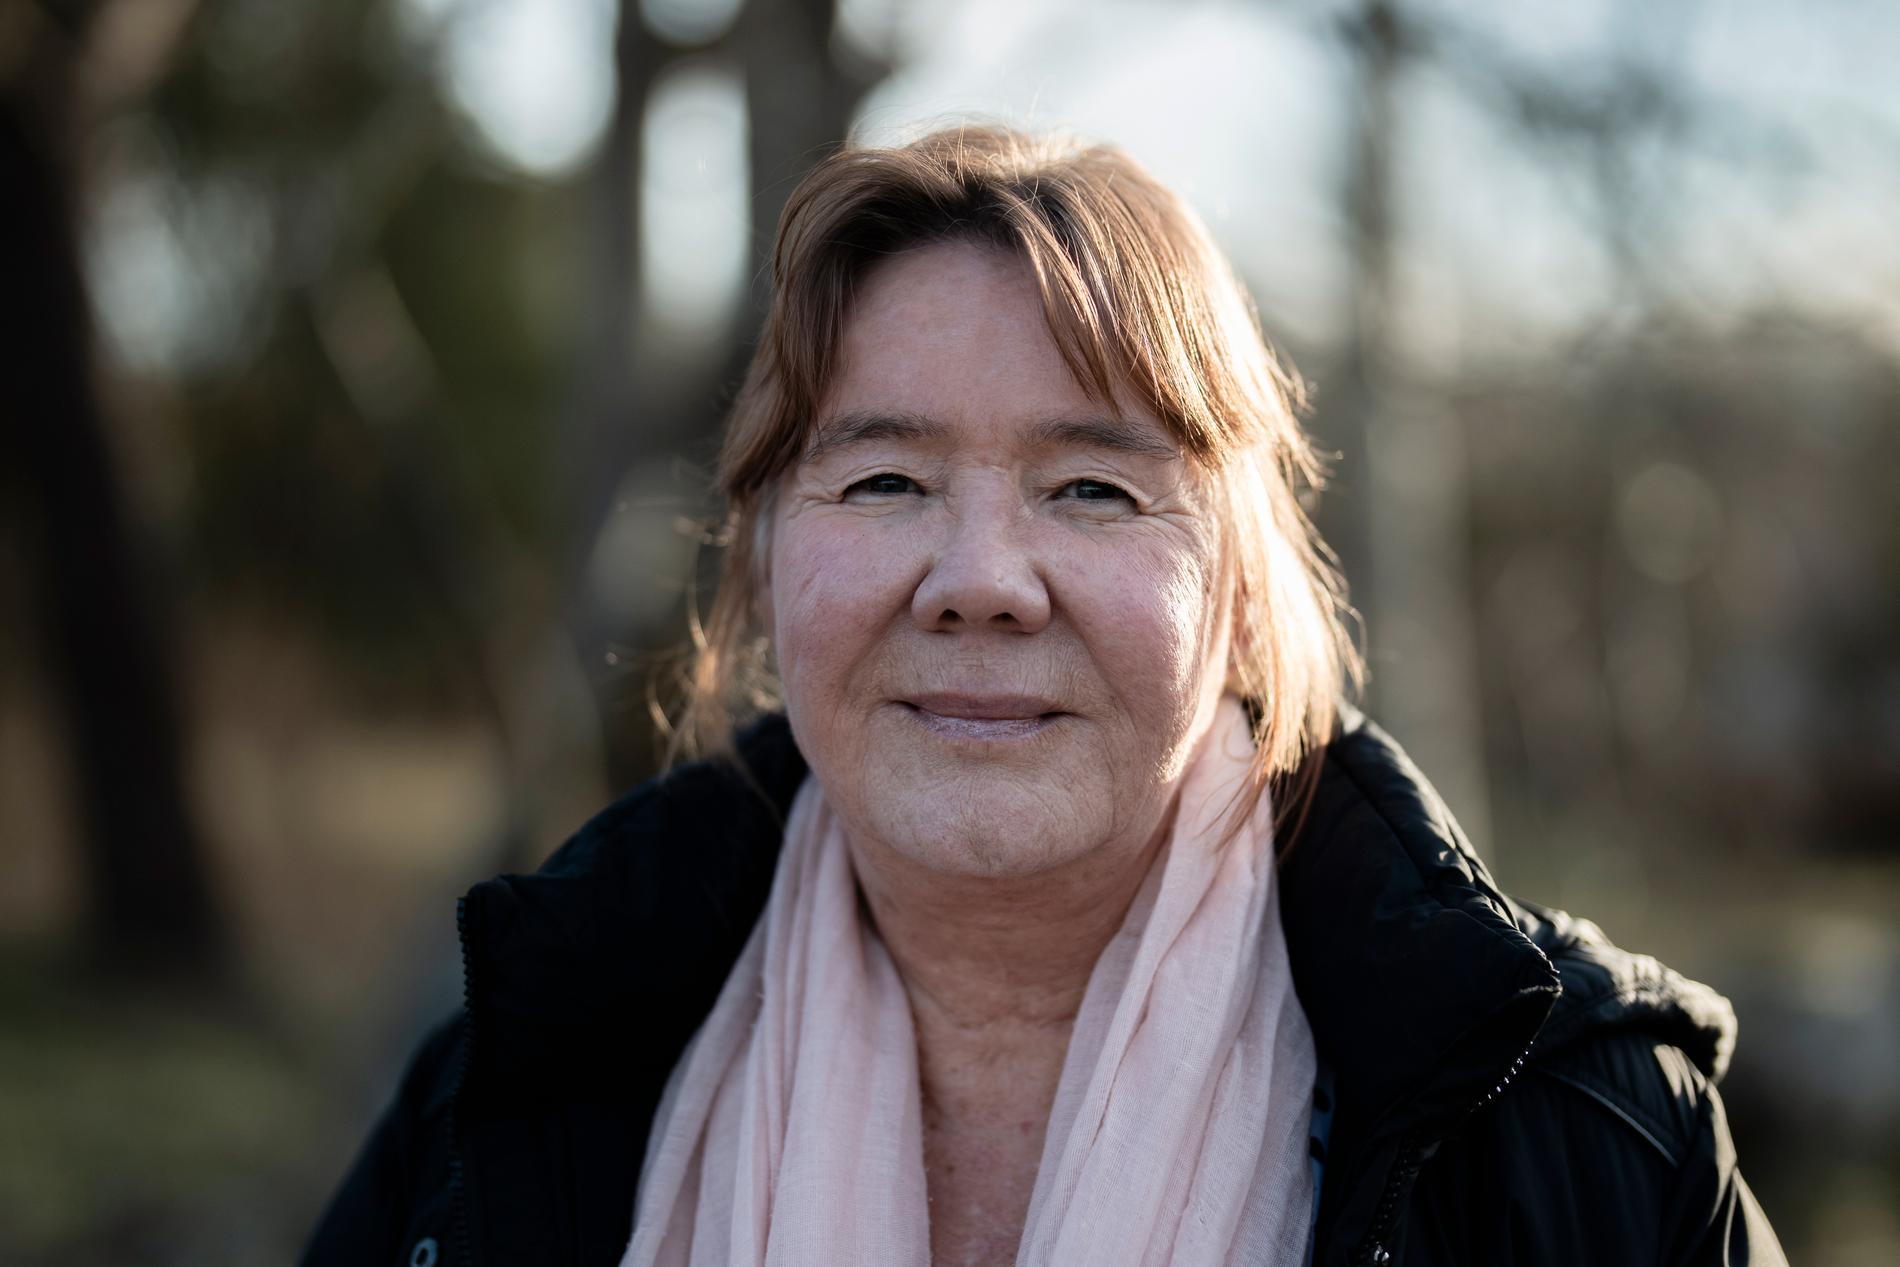 ”Min pappa hade en jättebra grundfysik och sprang i skogen tills han var 85”, berättar Lena Nikkinen. 